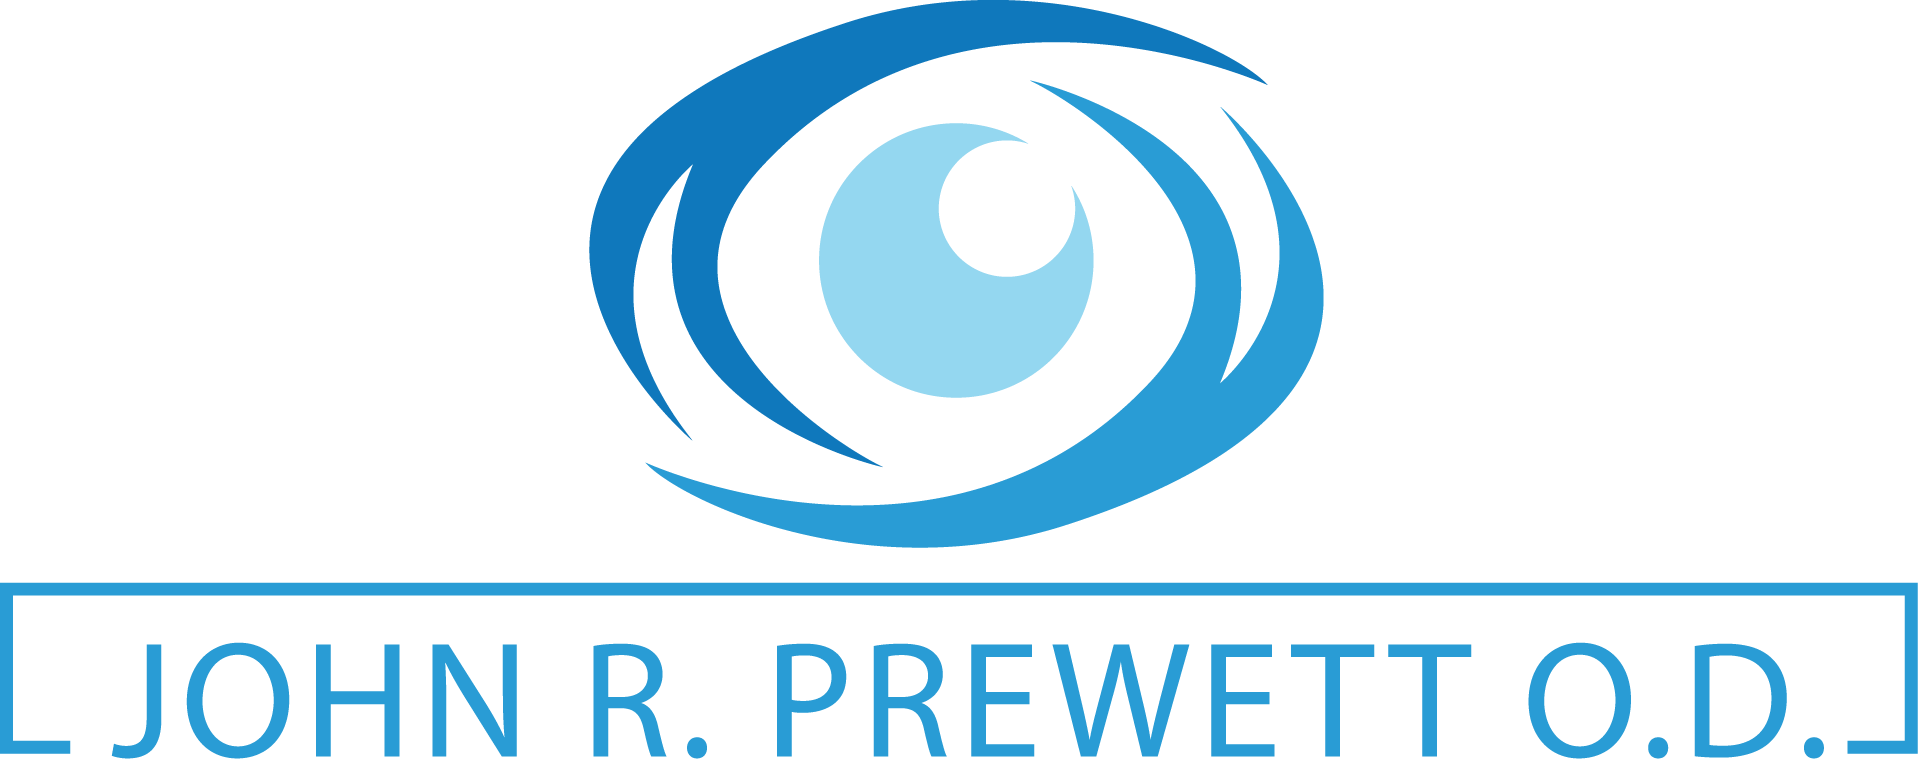 John R. Prewett Optometry